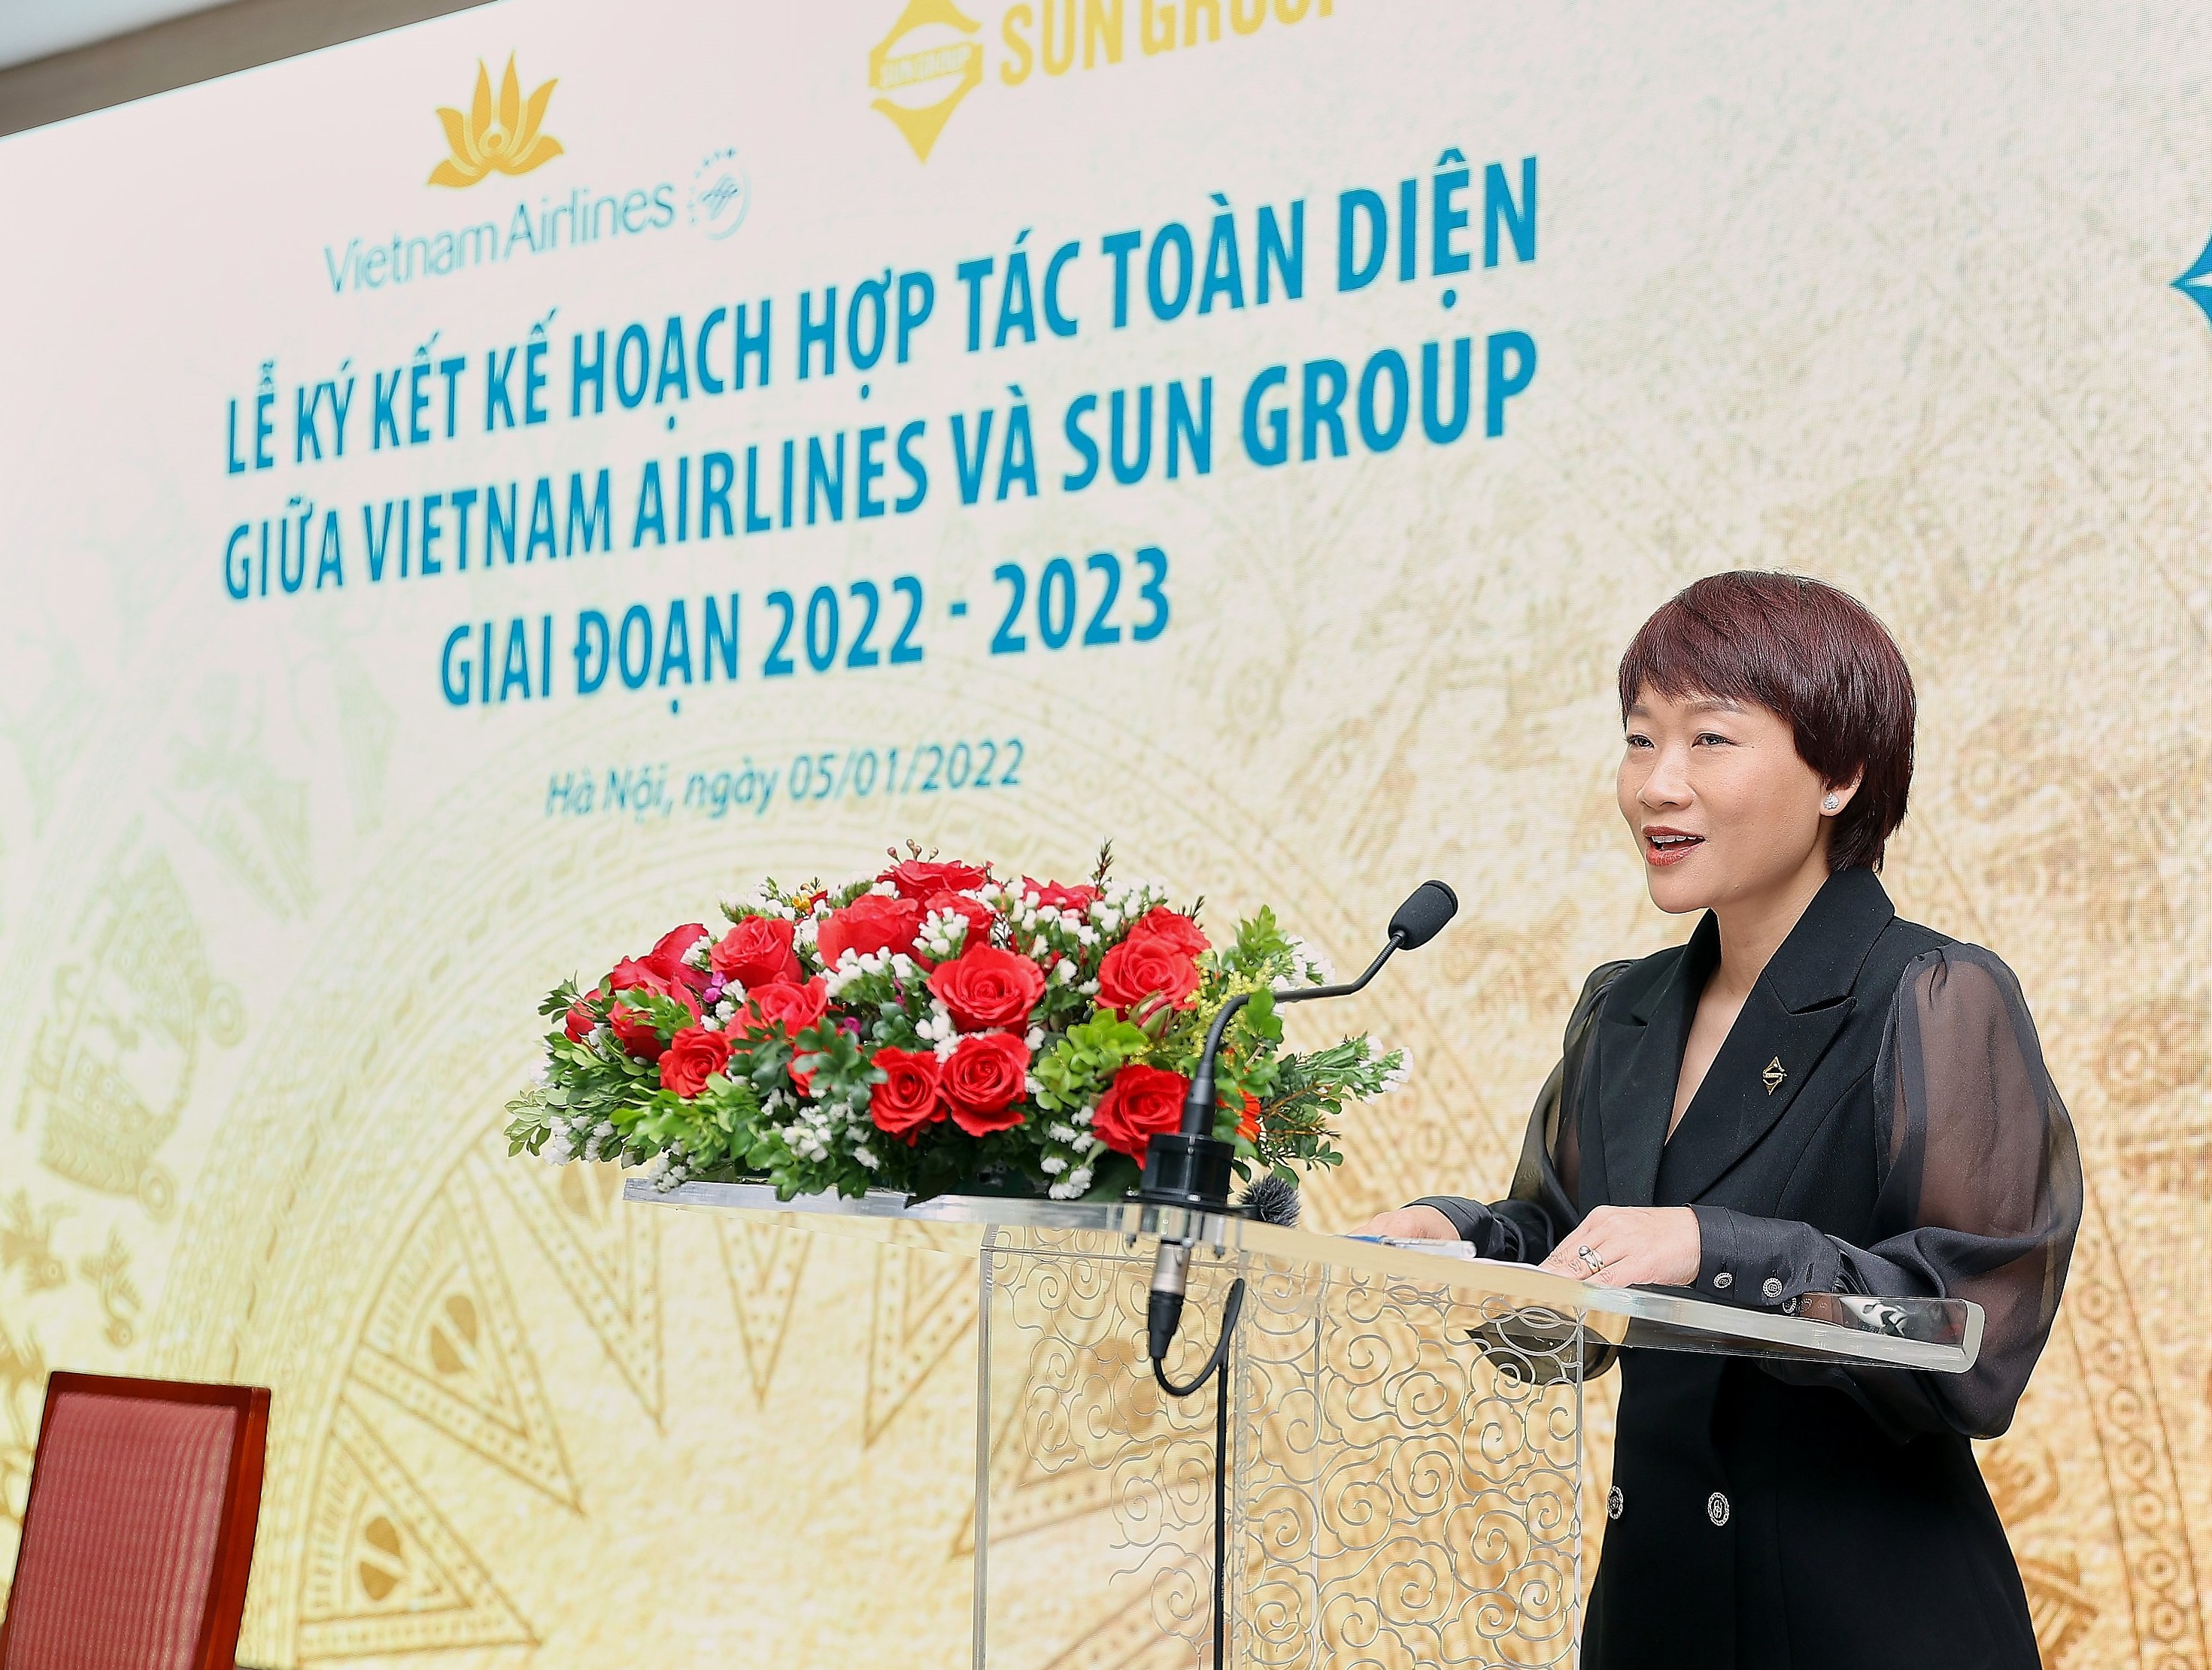 Cần biết - Sun Group và Vietnam Airlines bắt tay hợp tác, gia tăng nhiều lợi ích (Hình 5).